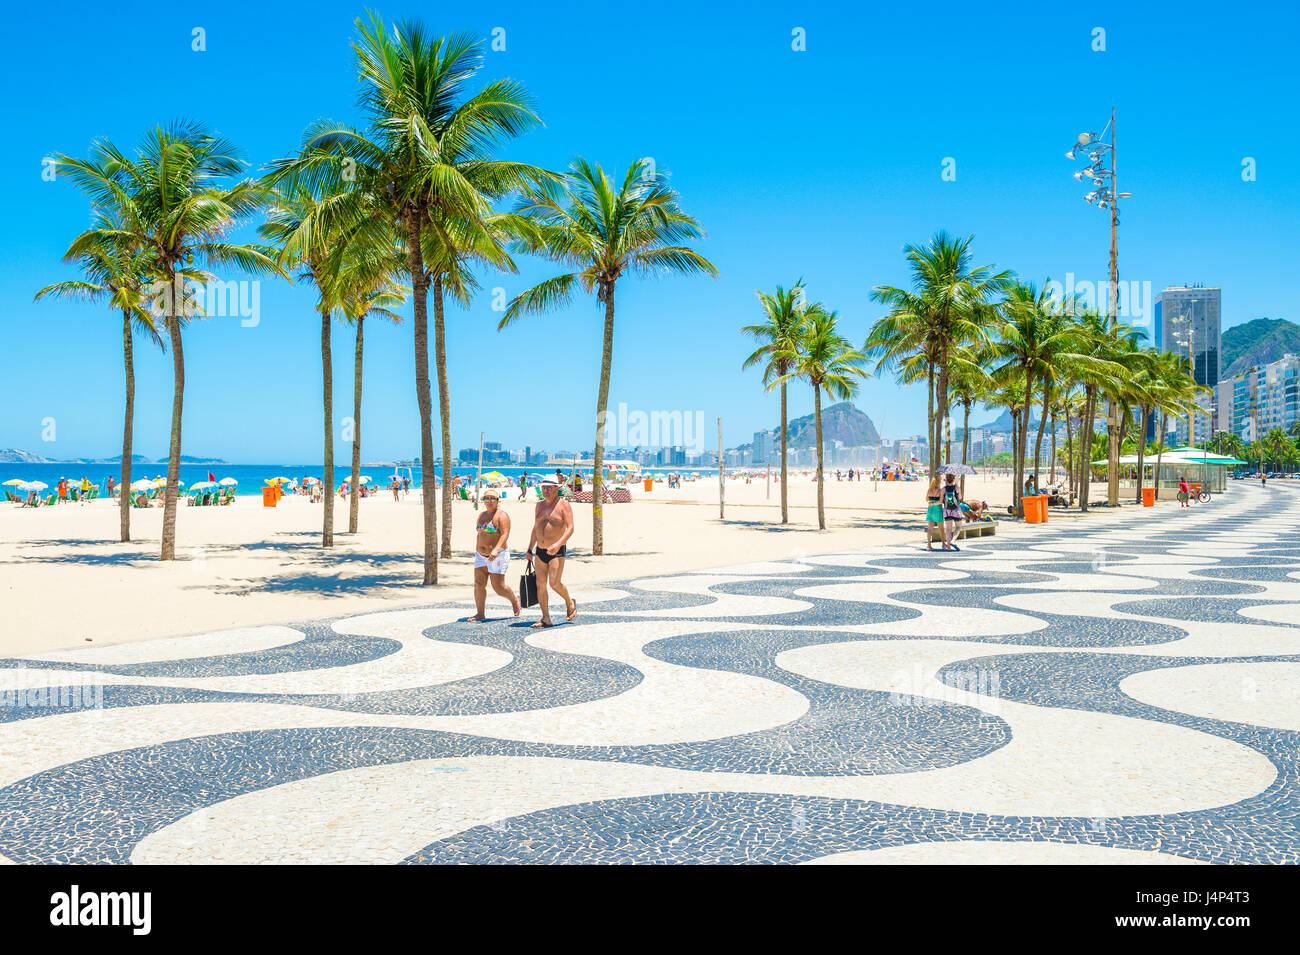 RIO DE JANEIRO - 15. Februar 2017: Ein paar gehen gemeinsam entlang der ikonischen schwarz-weiß Wellenmuster der Promenade am Strand Copacabana. Stockfoto